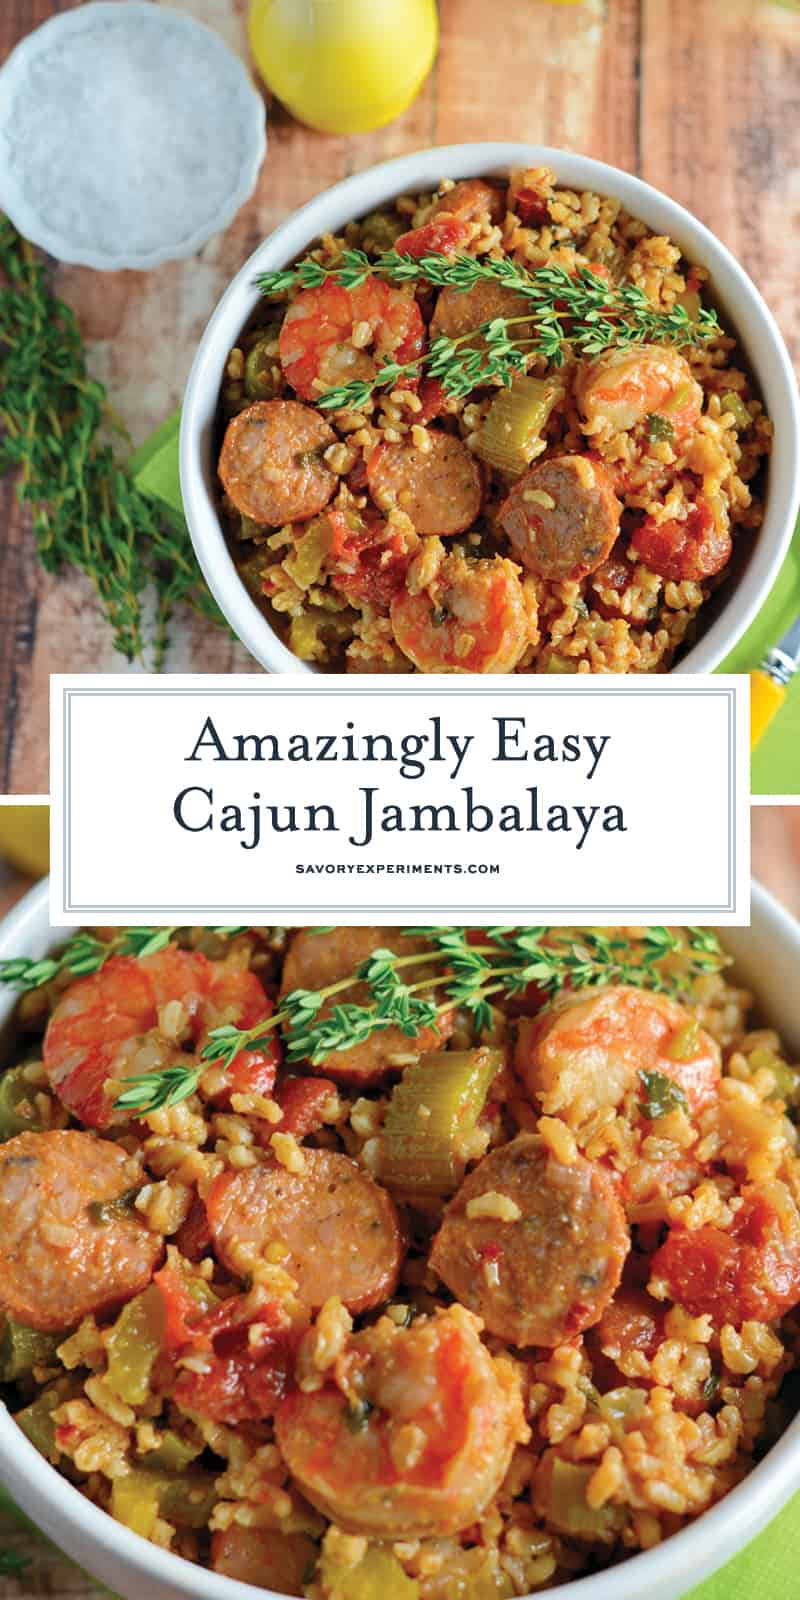 Cajun Jambalaya - An Amazingly Easy Jambalaya Recipe